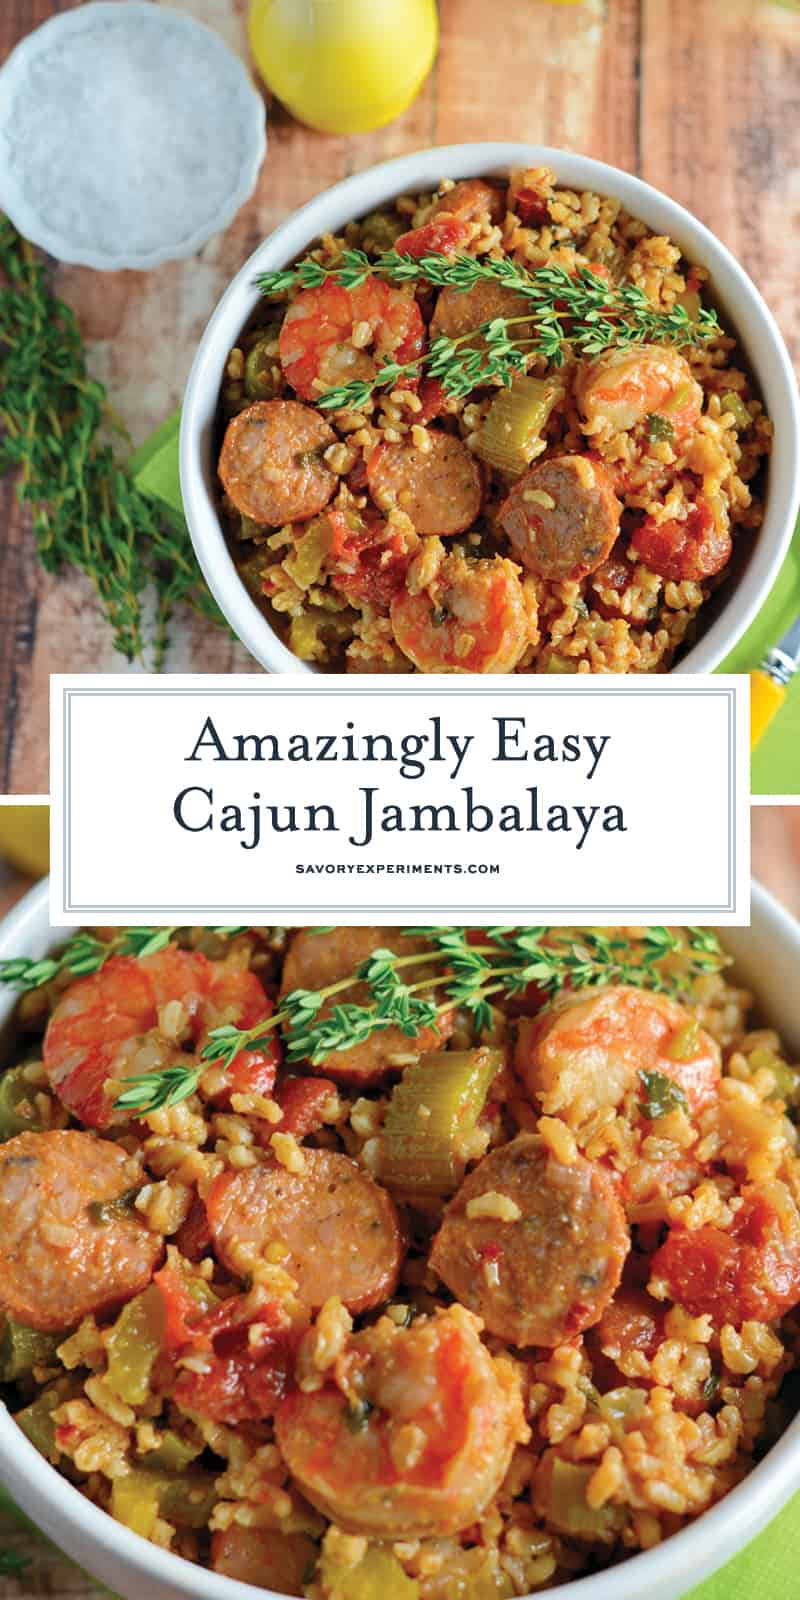 Cajun Jambalaya - An Amazingly Easy Jambalaya Recipe